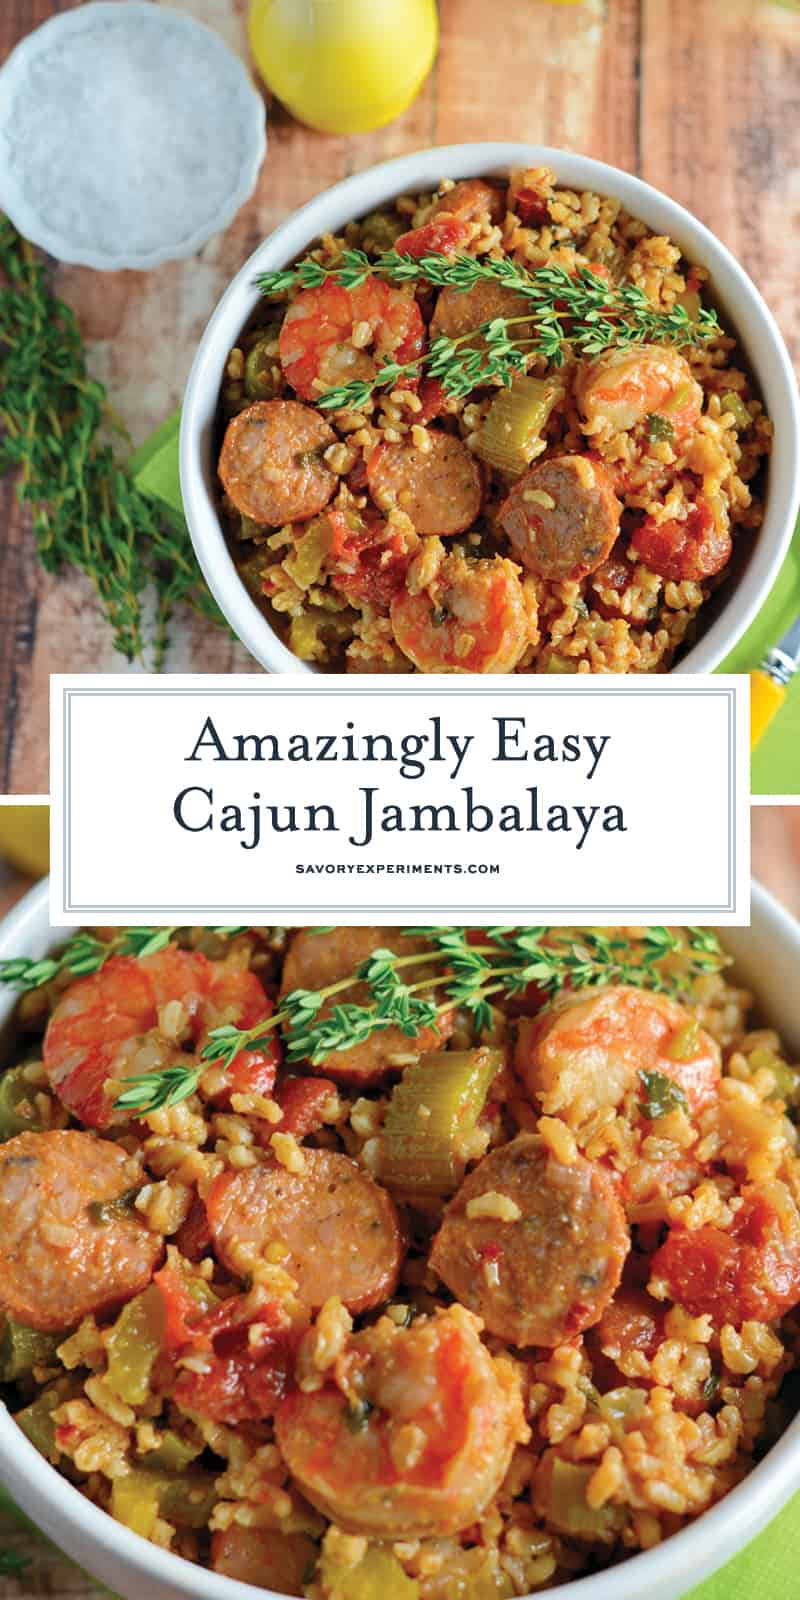 Cajun Jambalaya - An Amazingly Easy Jambalaya Recipe